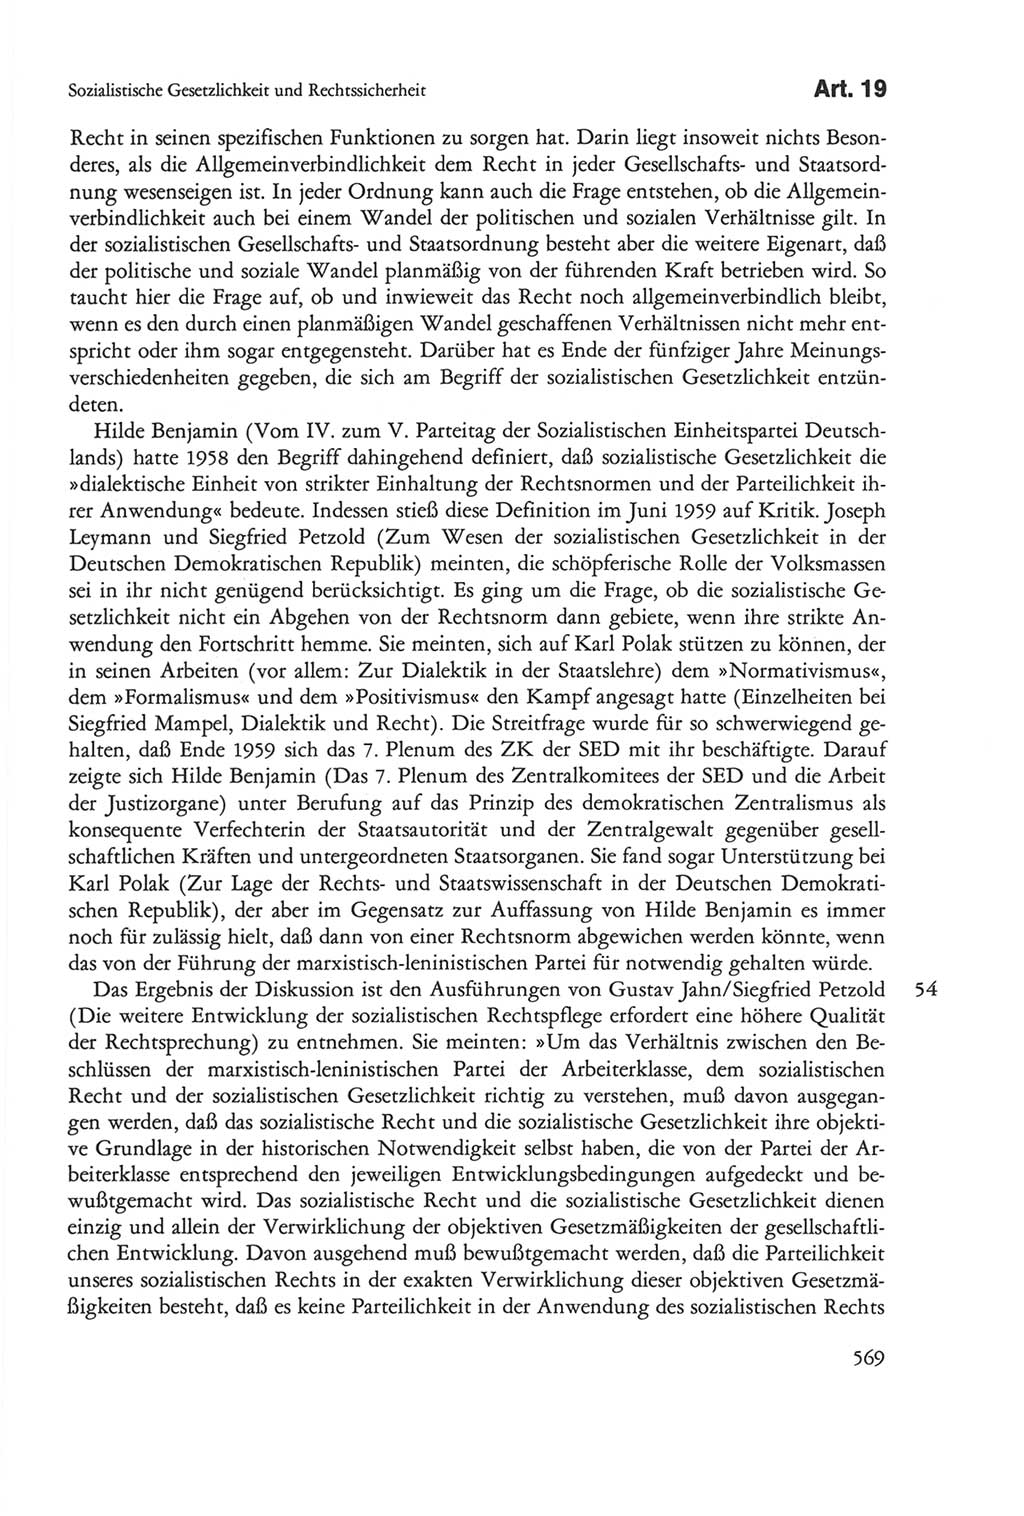 Die sozialistische Verfassung der Deutschen Demokratischen Republik (DDR), Kommentar 1982, Seite 569 (Soz. Verf. DDR Komm. 1982, S. 569)